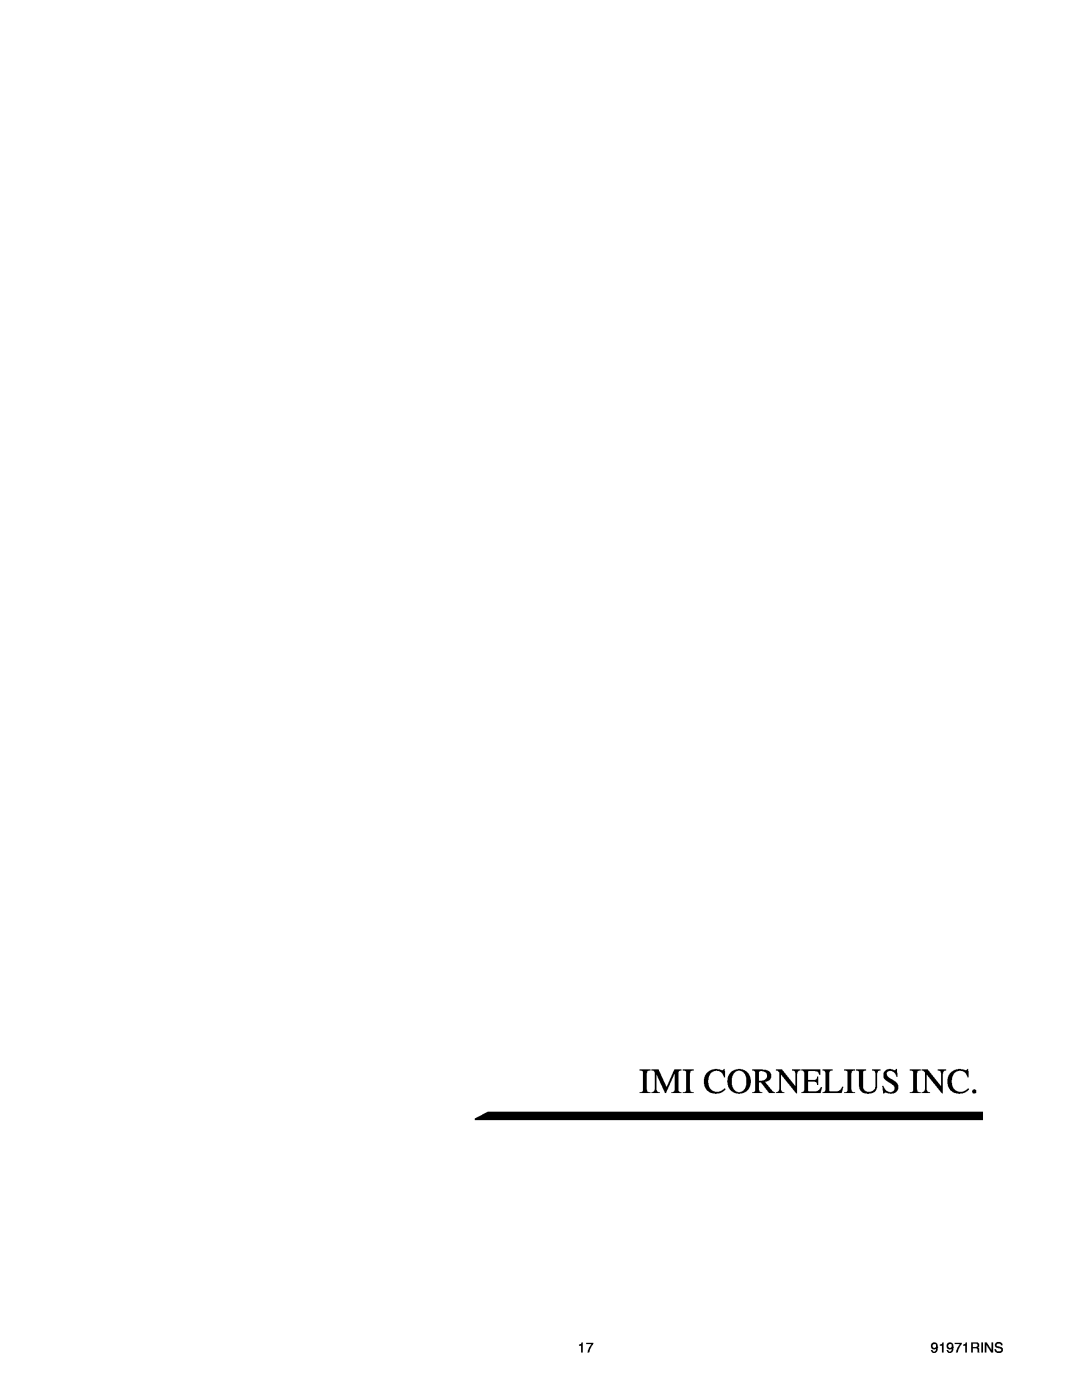 Cornelius ENDURO-150 installation manual Imi Cornelius Inc, 91971RINS 